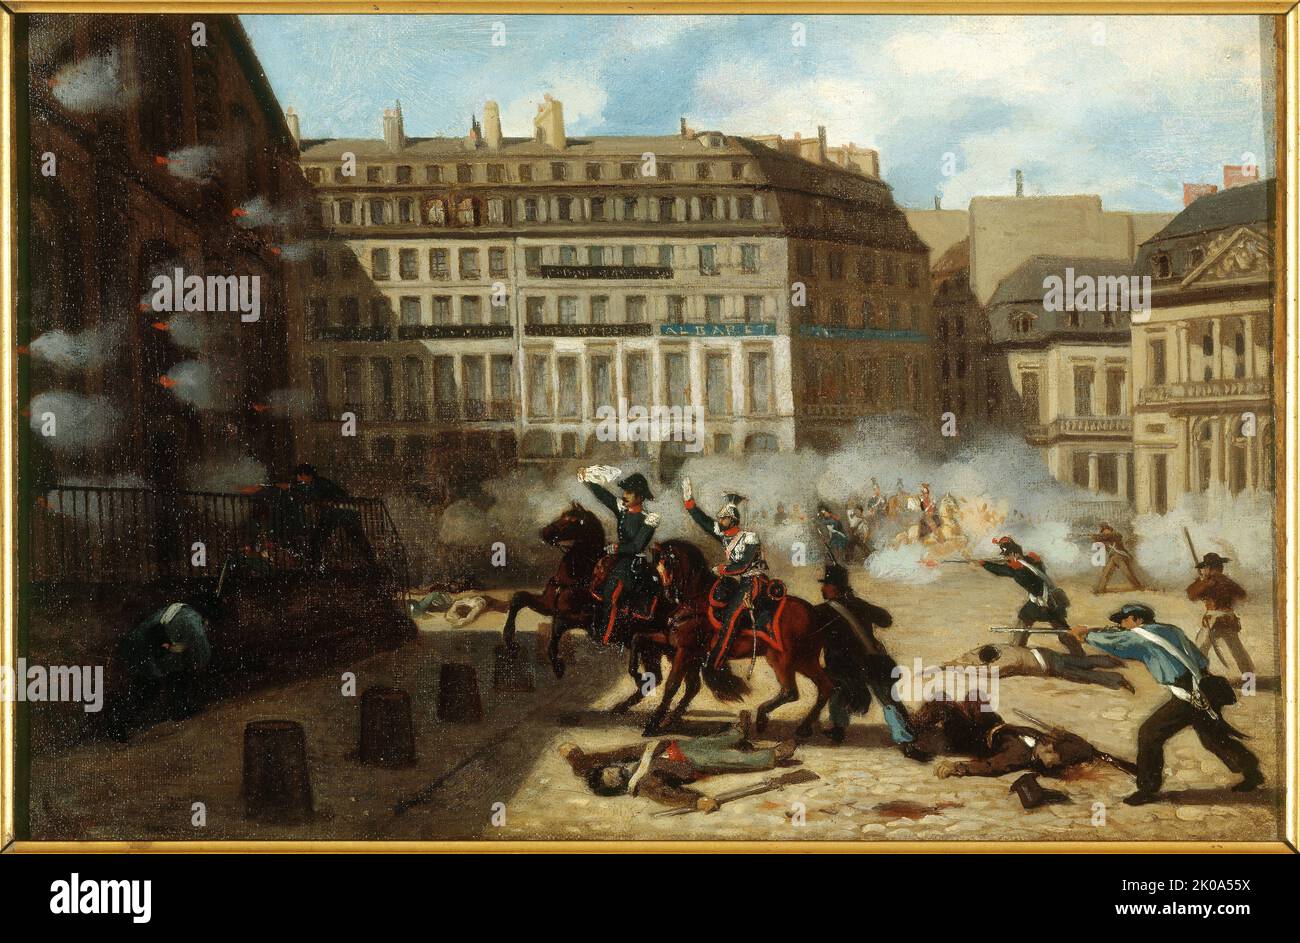 Capture of Chateau d'Eau, Place du Palais-Royal, February 24, 1848. Stock Photo